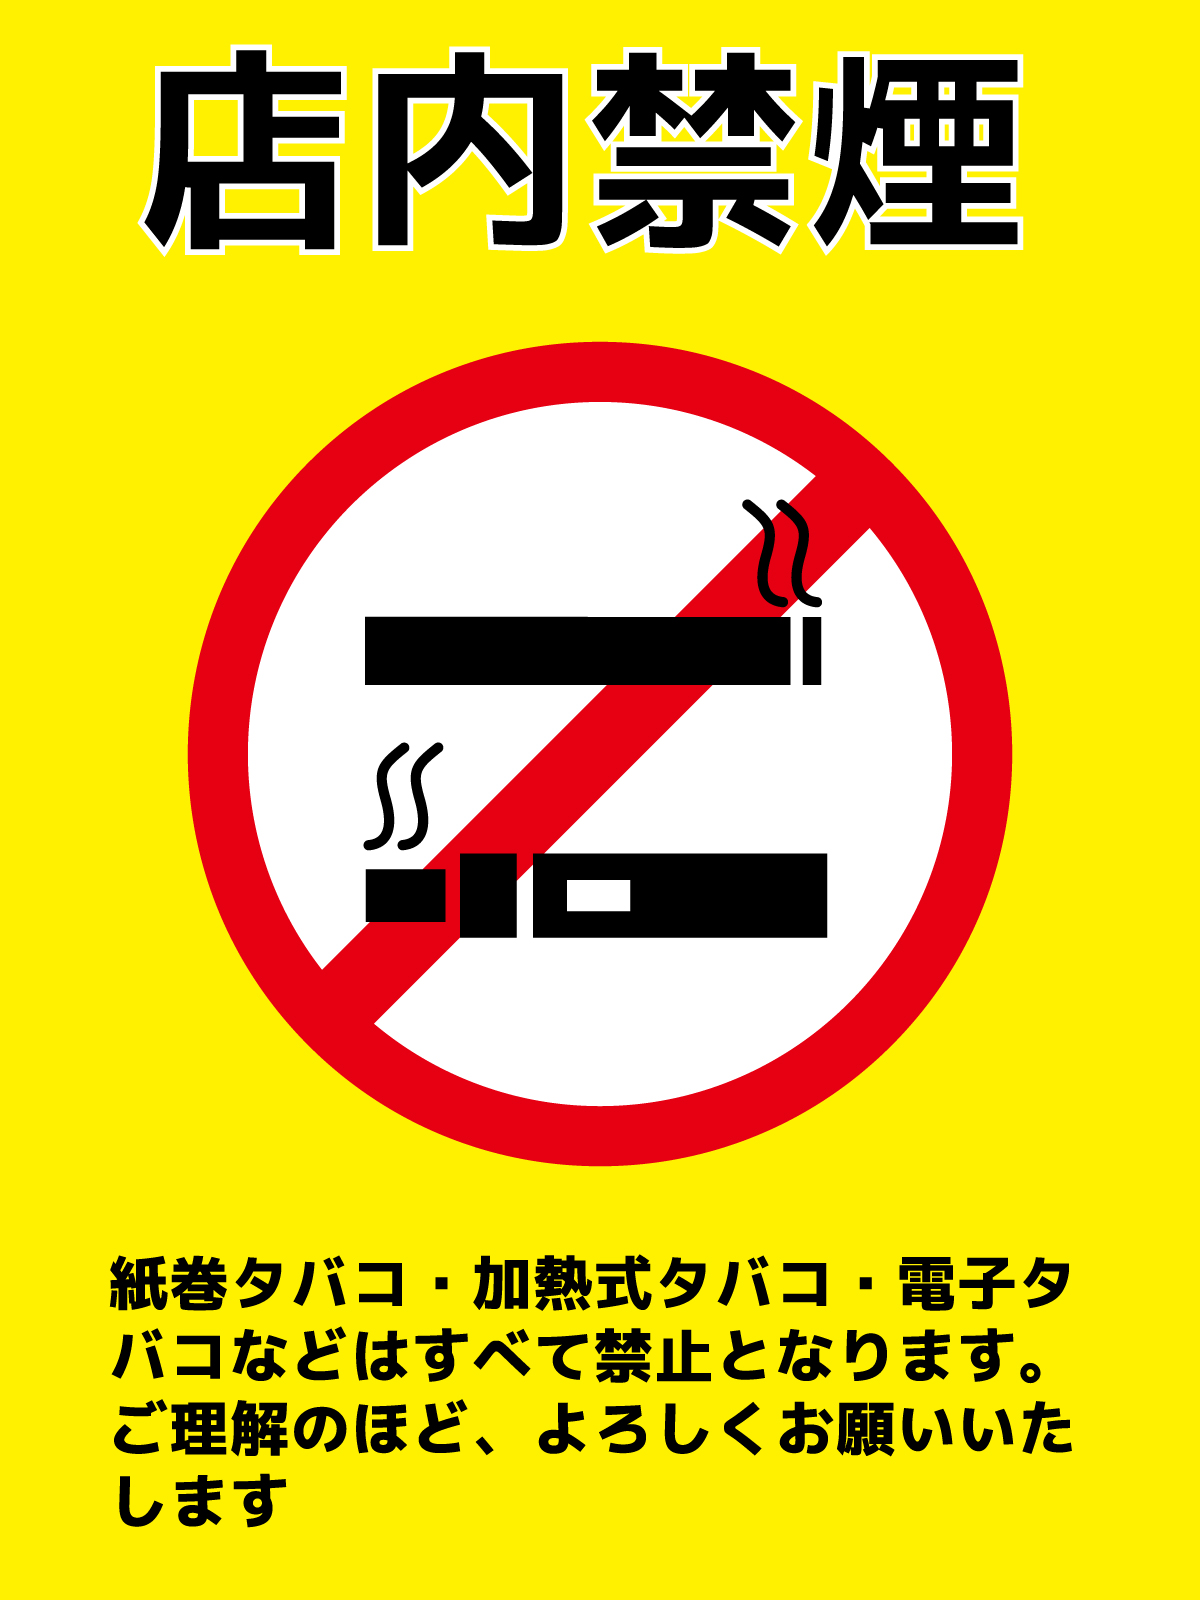 店内禁煙となります。